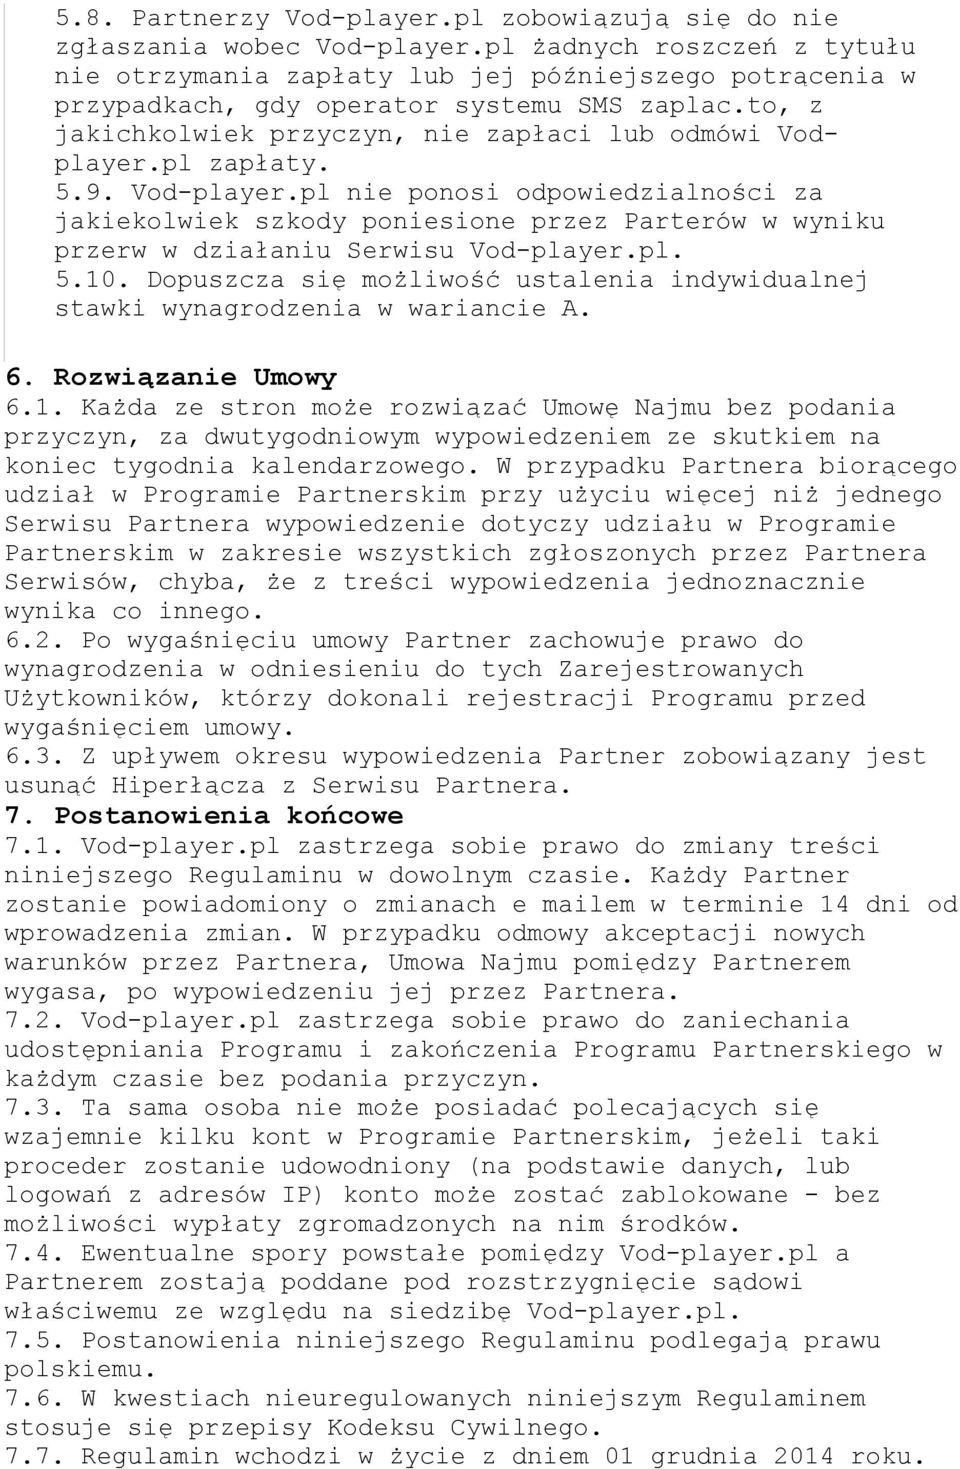 pl zapłaty. 5.9. Vod-player.pl nie ponosi odpowiedzialności za jakiekolwiek szkody poniesione przez Parterów w wyniku przerw w działaniu Serwisu Vod-player.pl. 5.10.